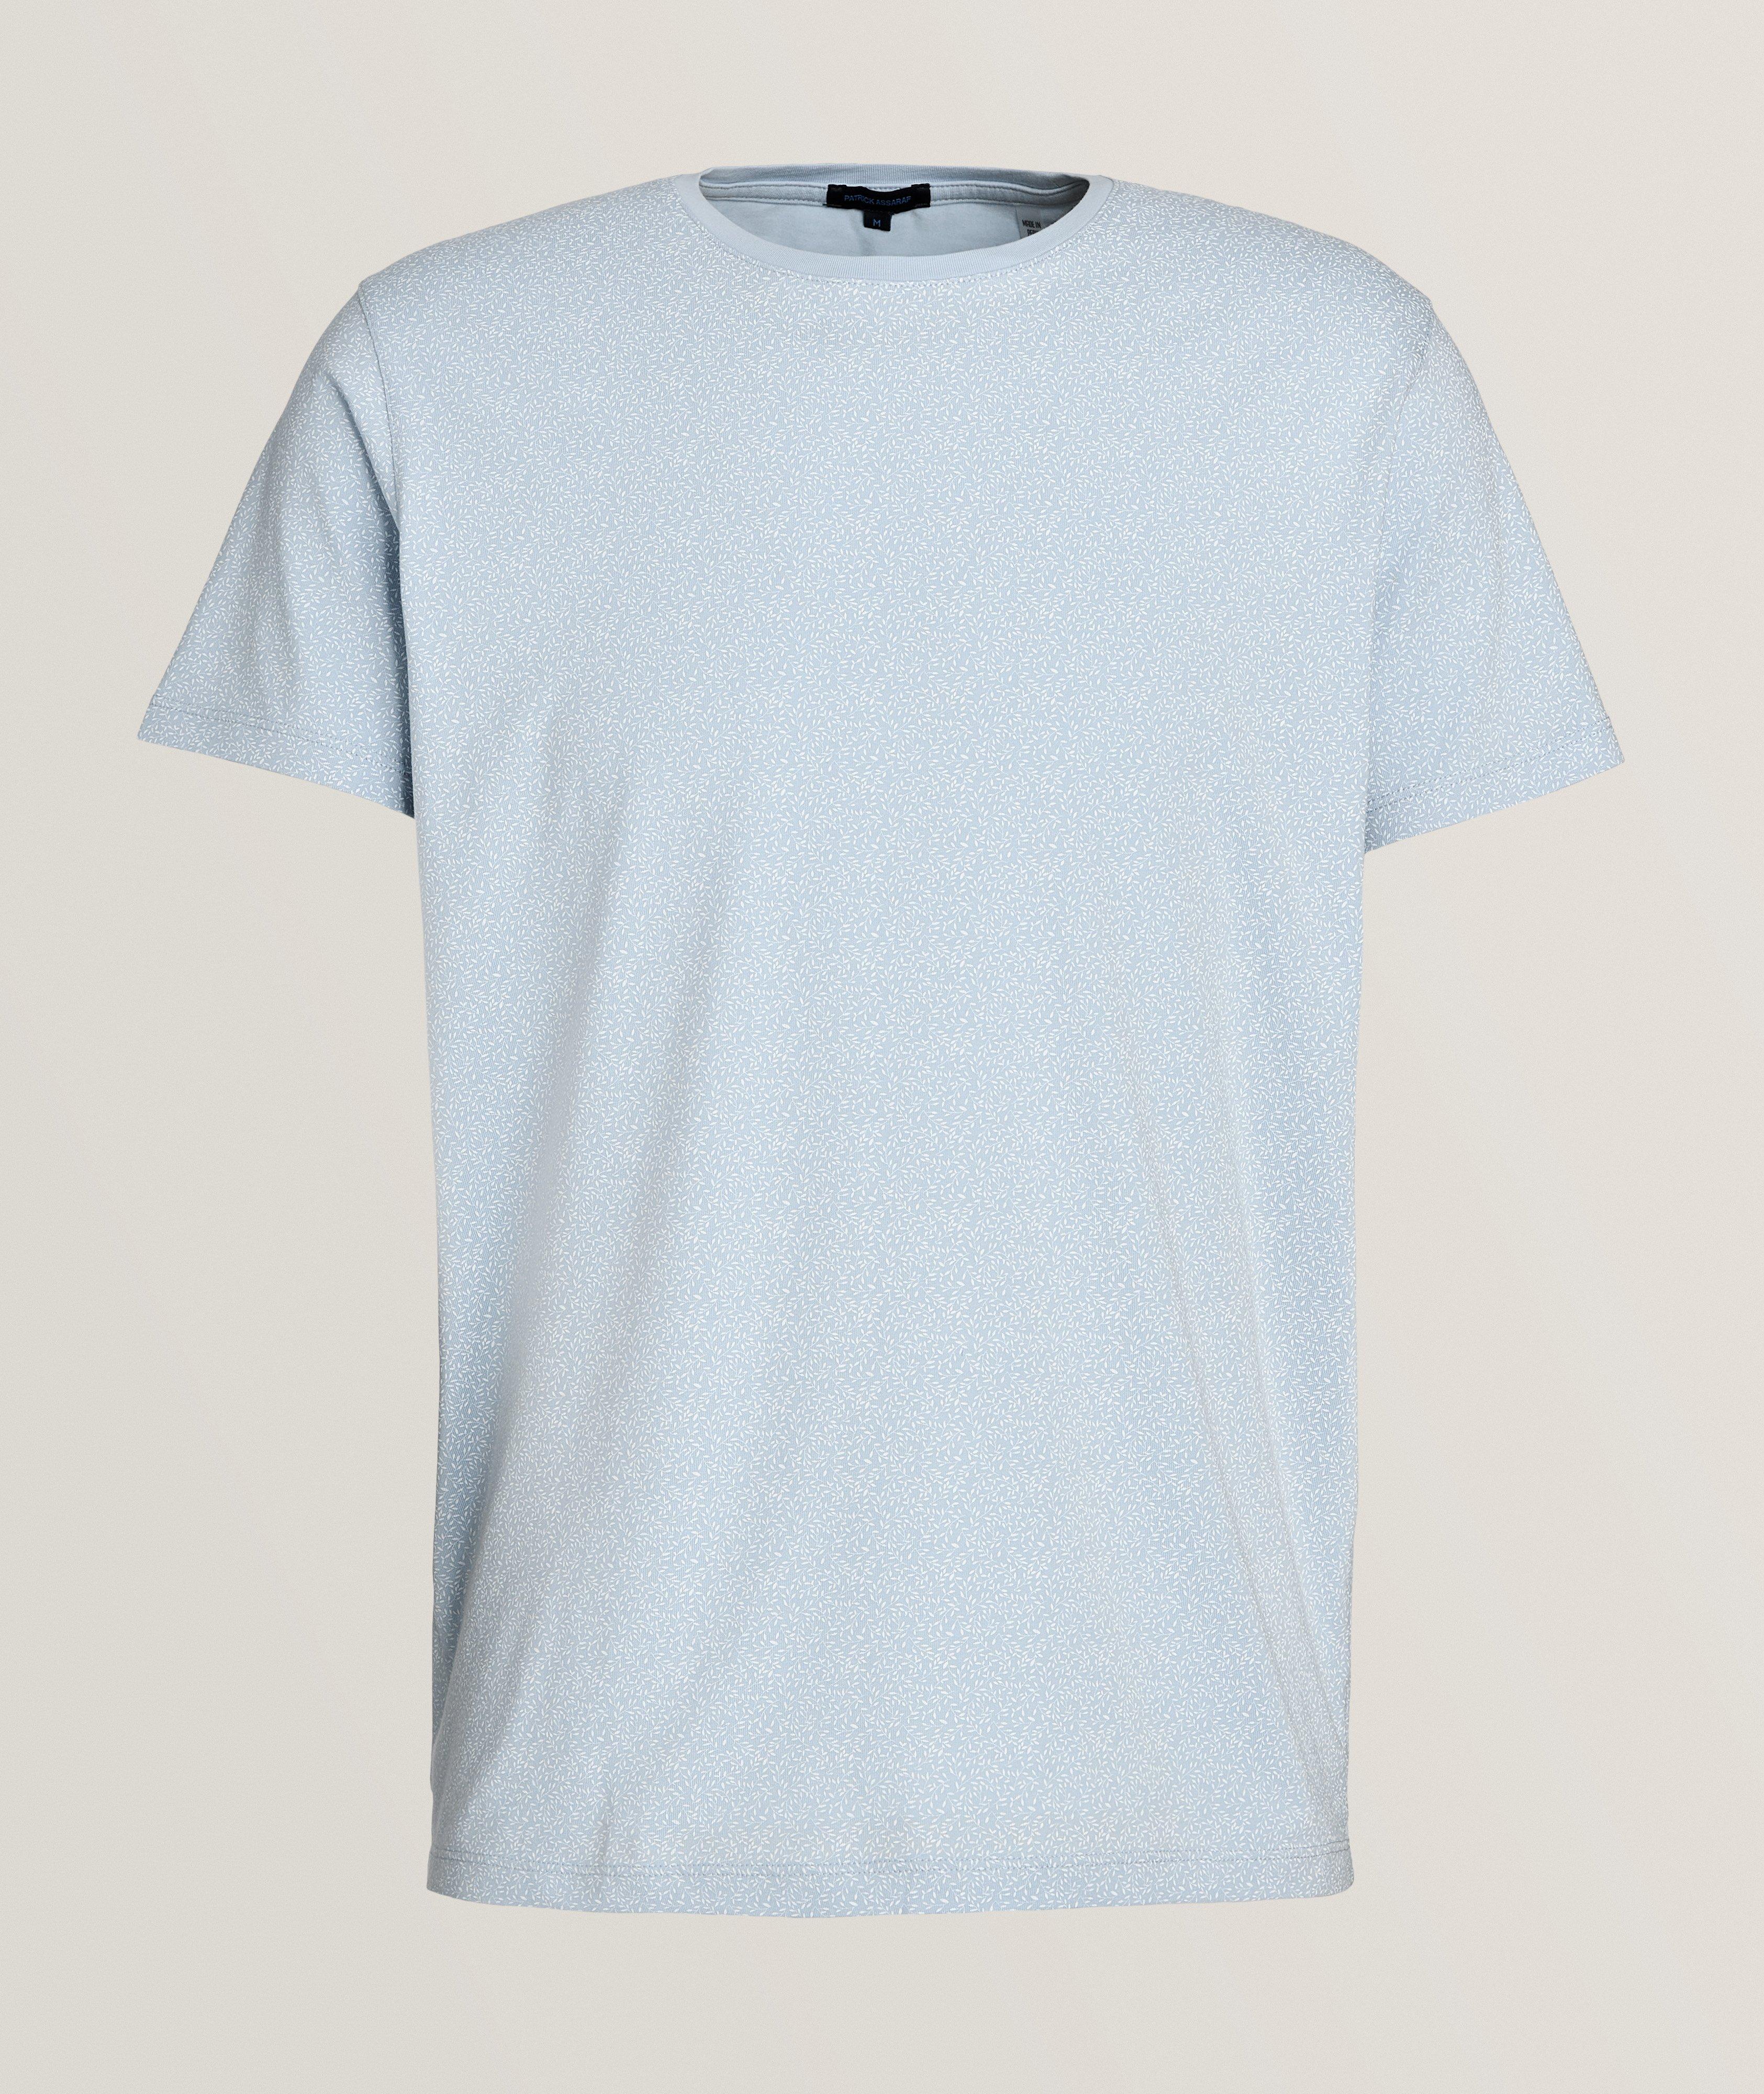 T-shirt en coton pima extensible image 0